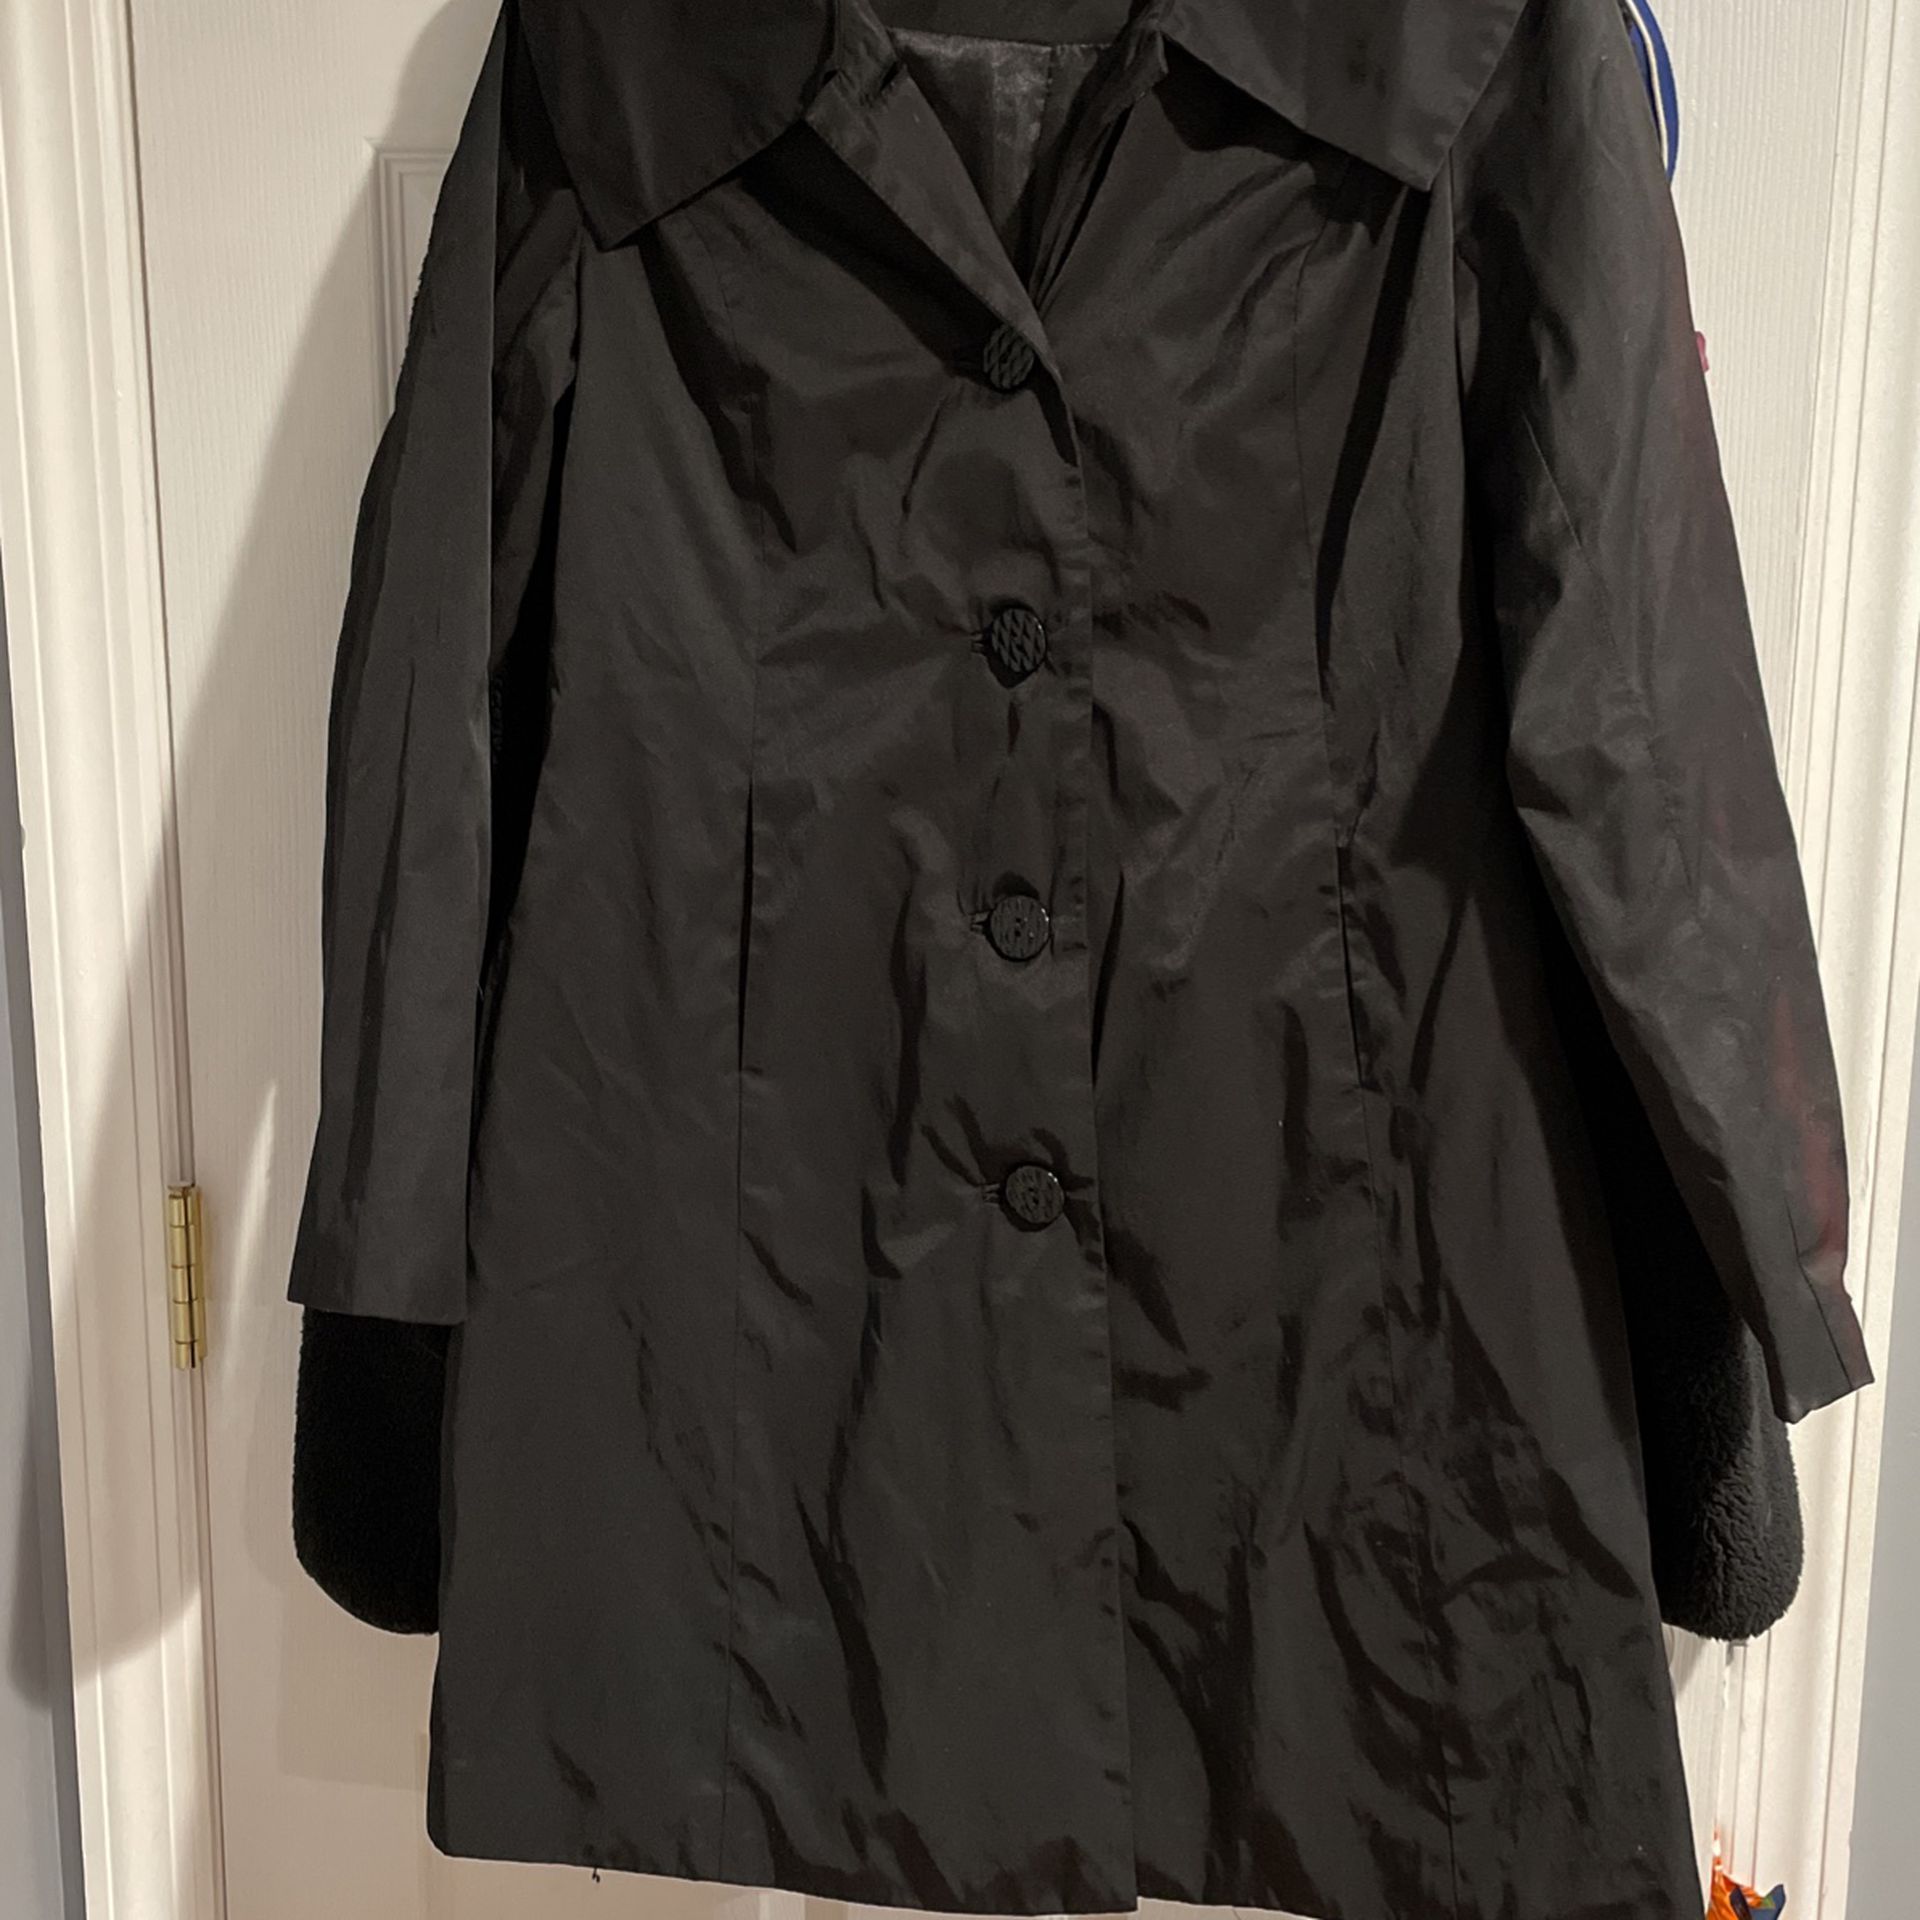 Waterproof Ladies Jacket Size m